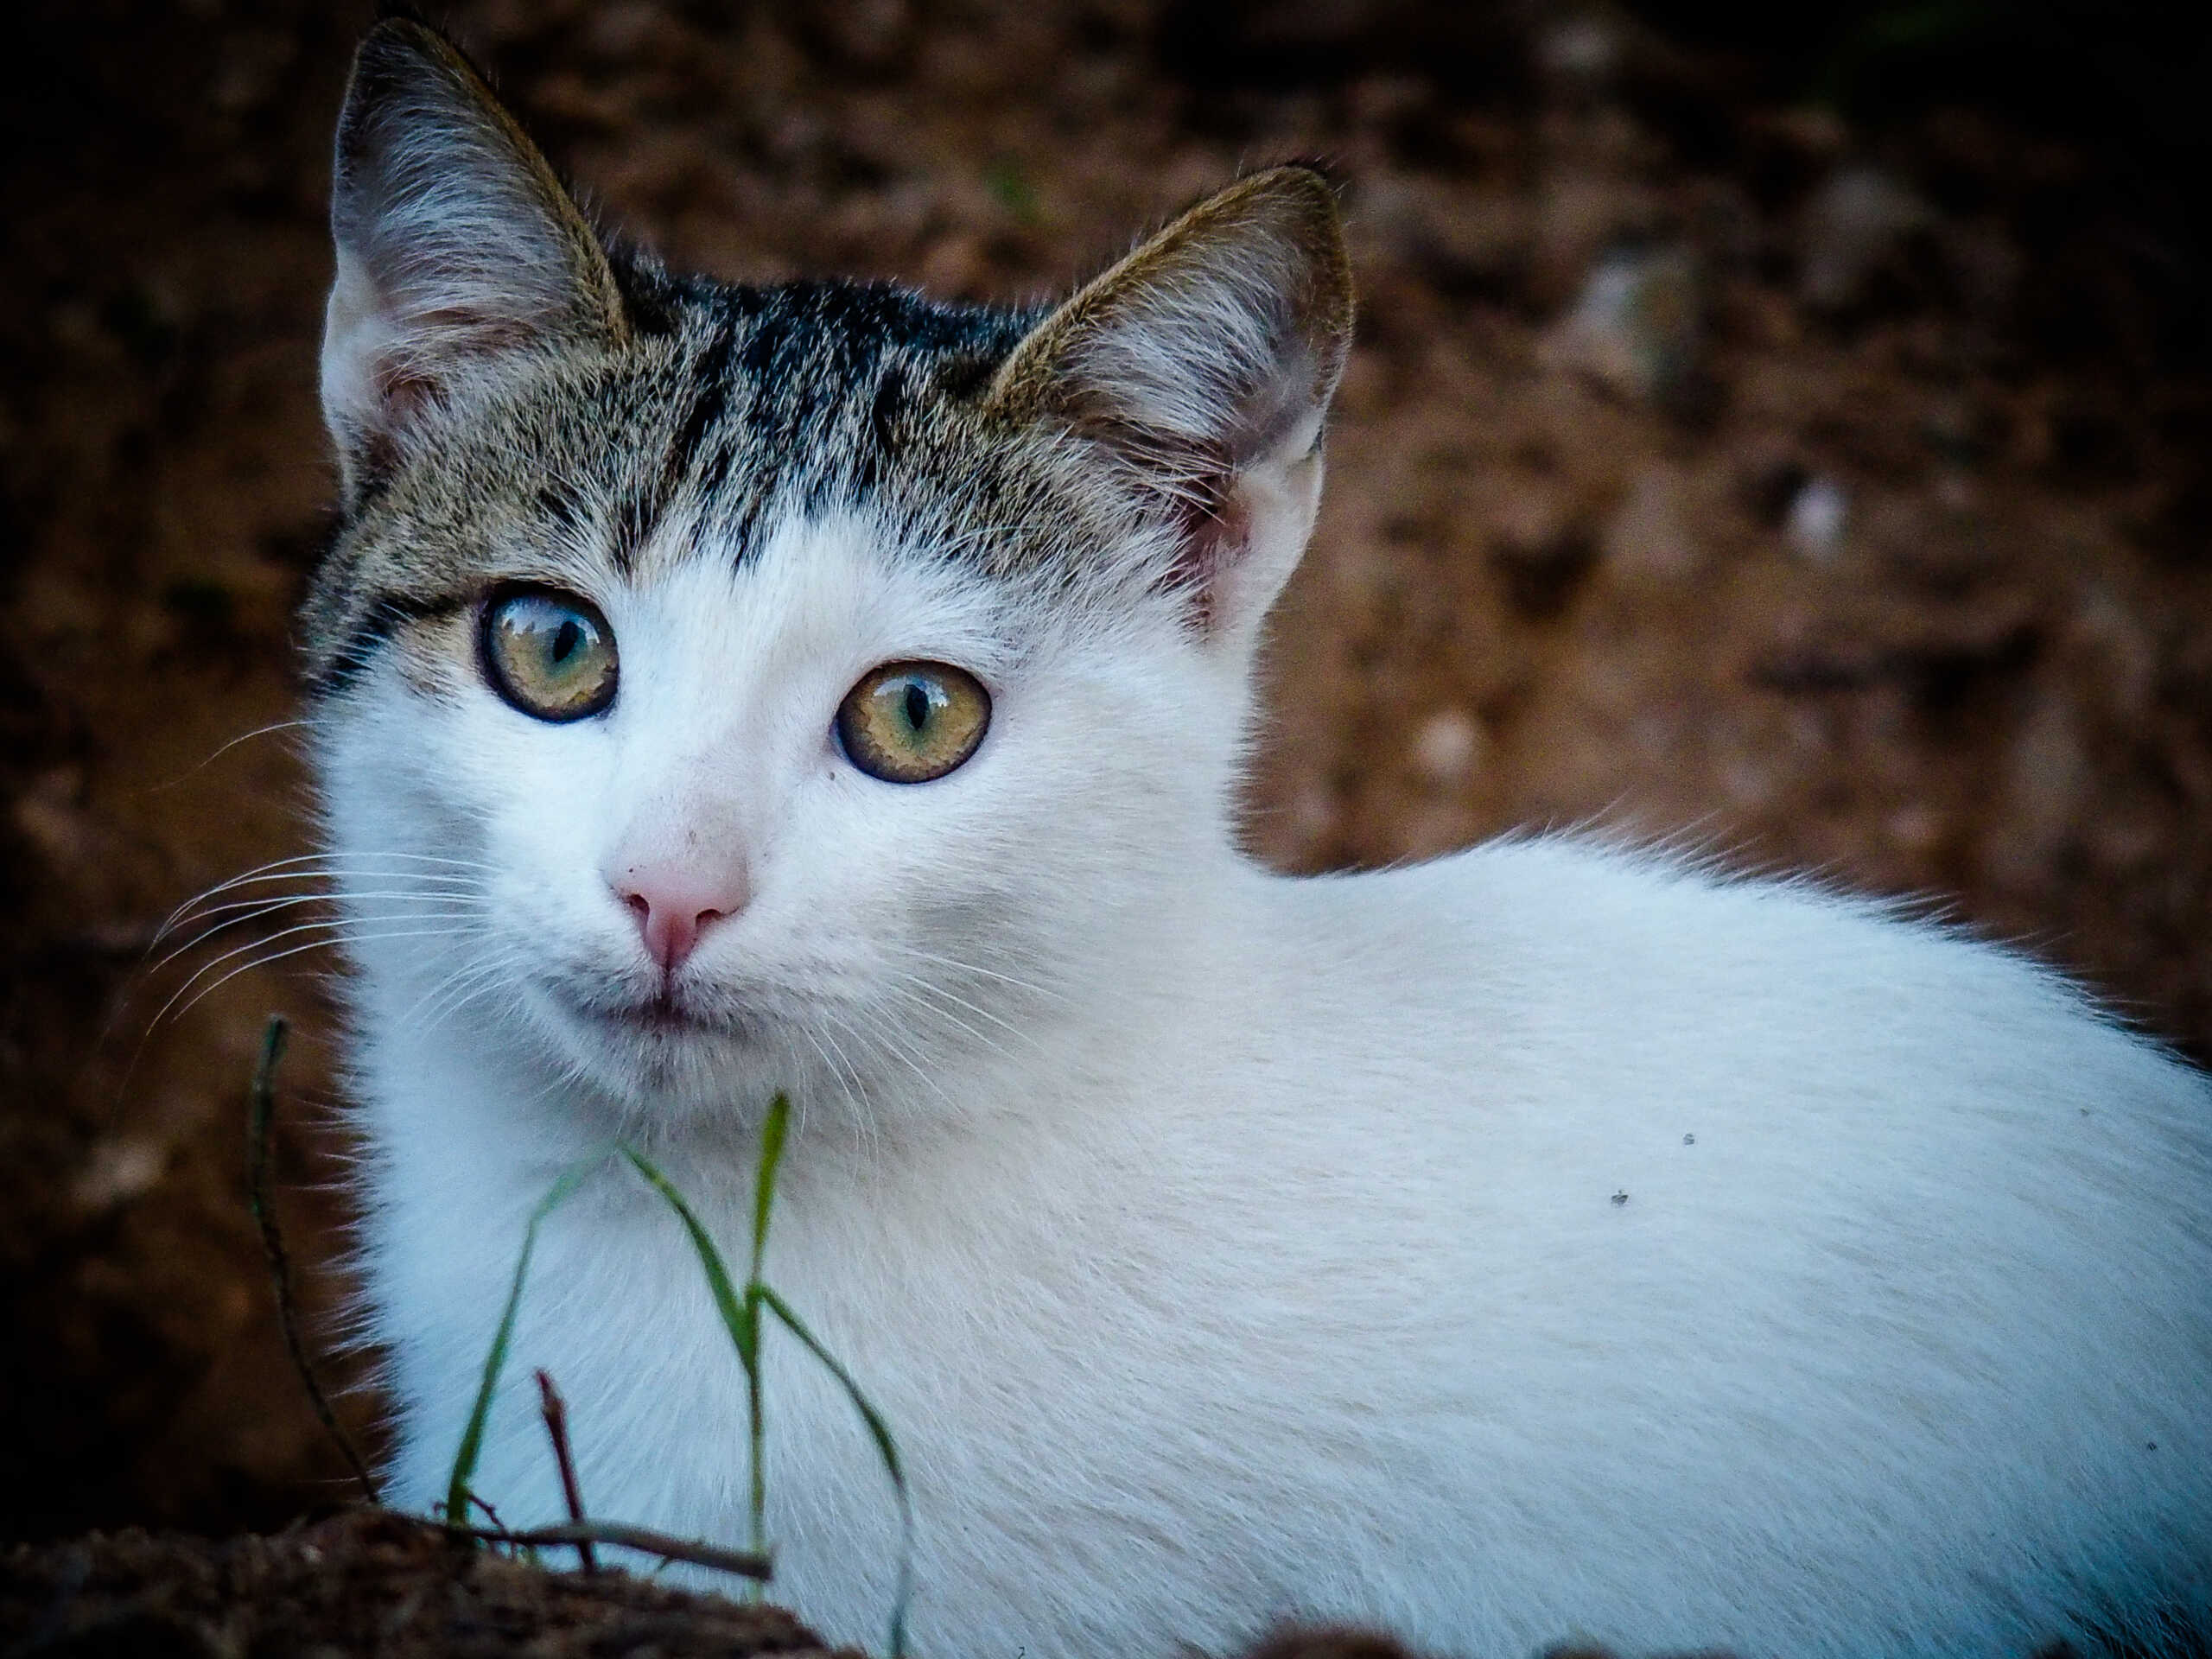 Πάτμος: Επιθέσεις σε γάτες με οξύ καταγγέλλουν φιλόζωοι, προσοχή σκληρές εικόνες